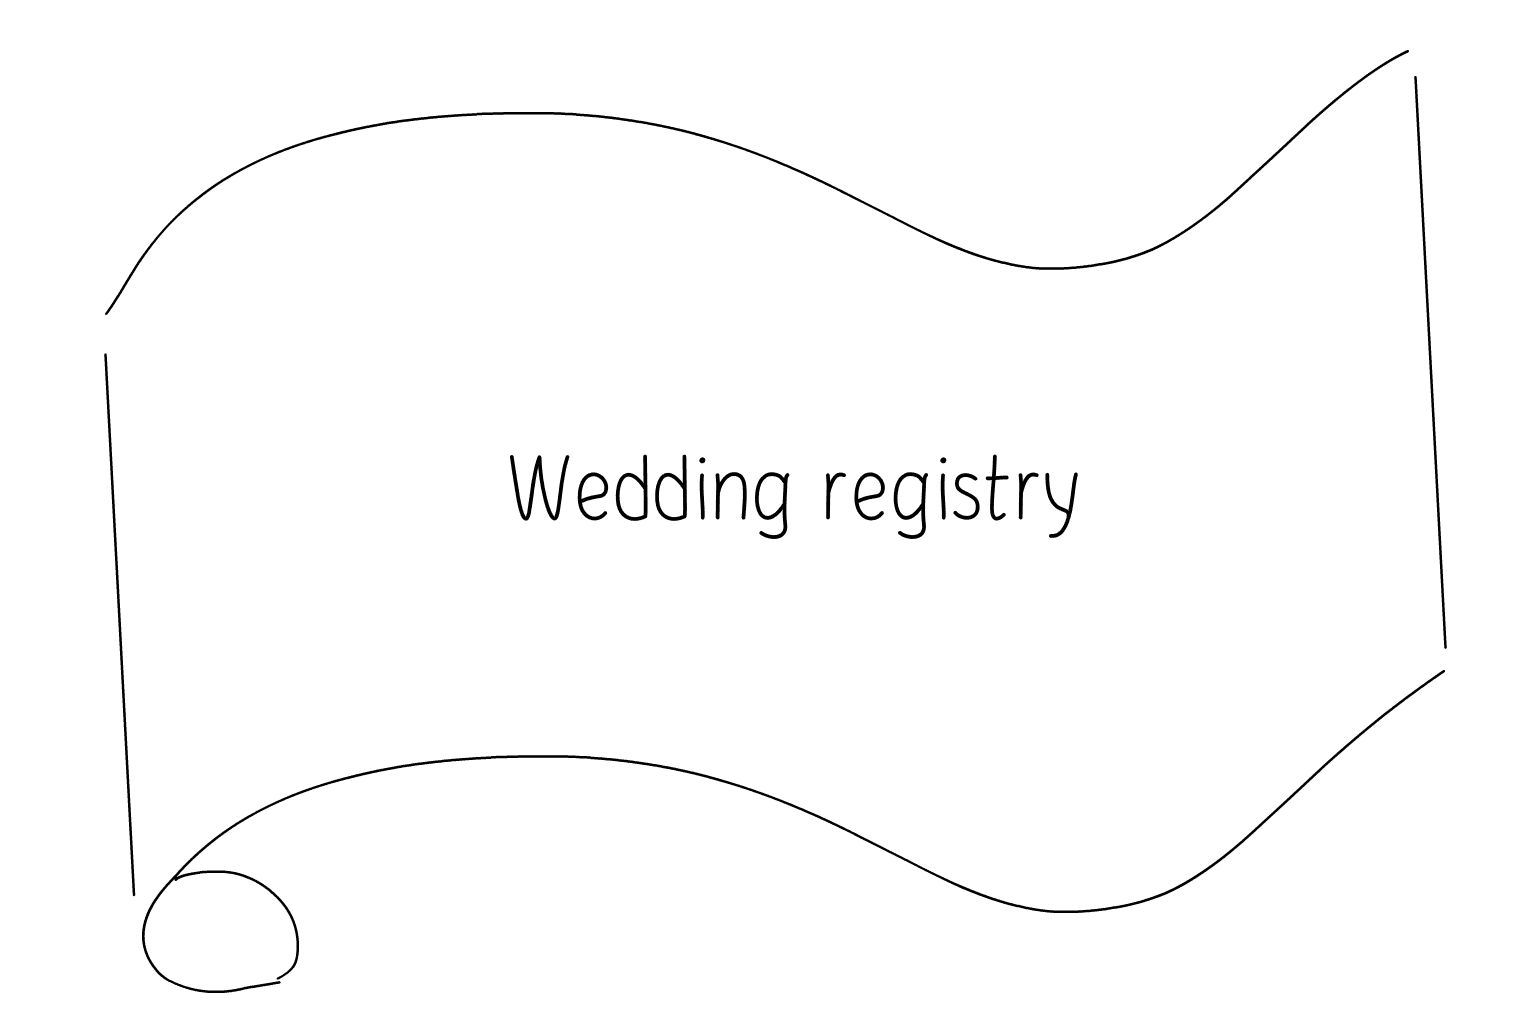 Иллюстрация услуг свадебного реестра